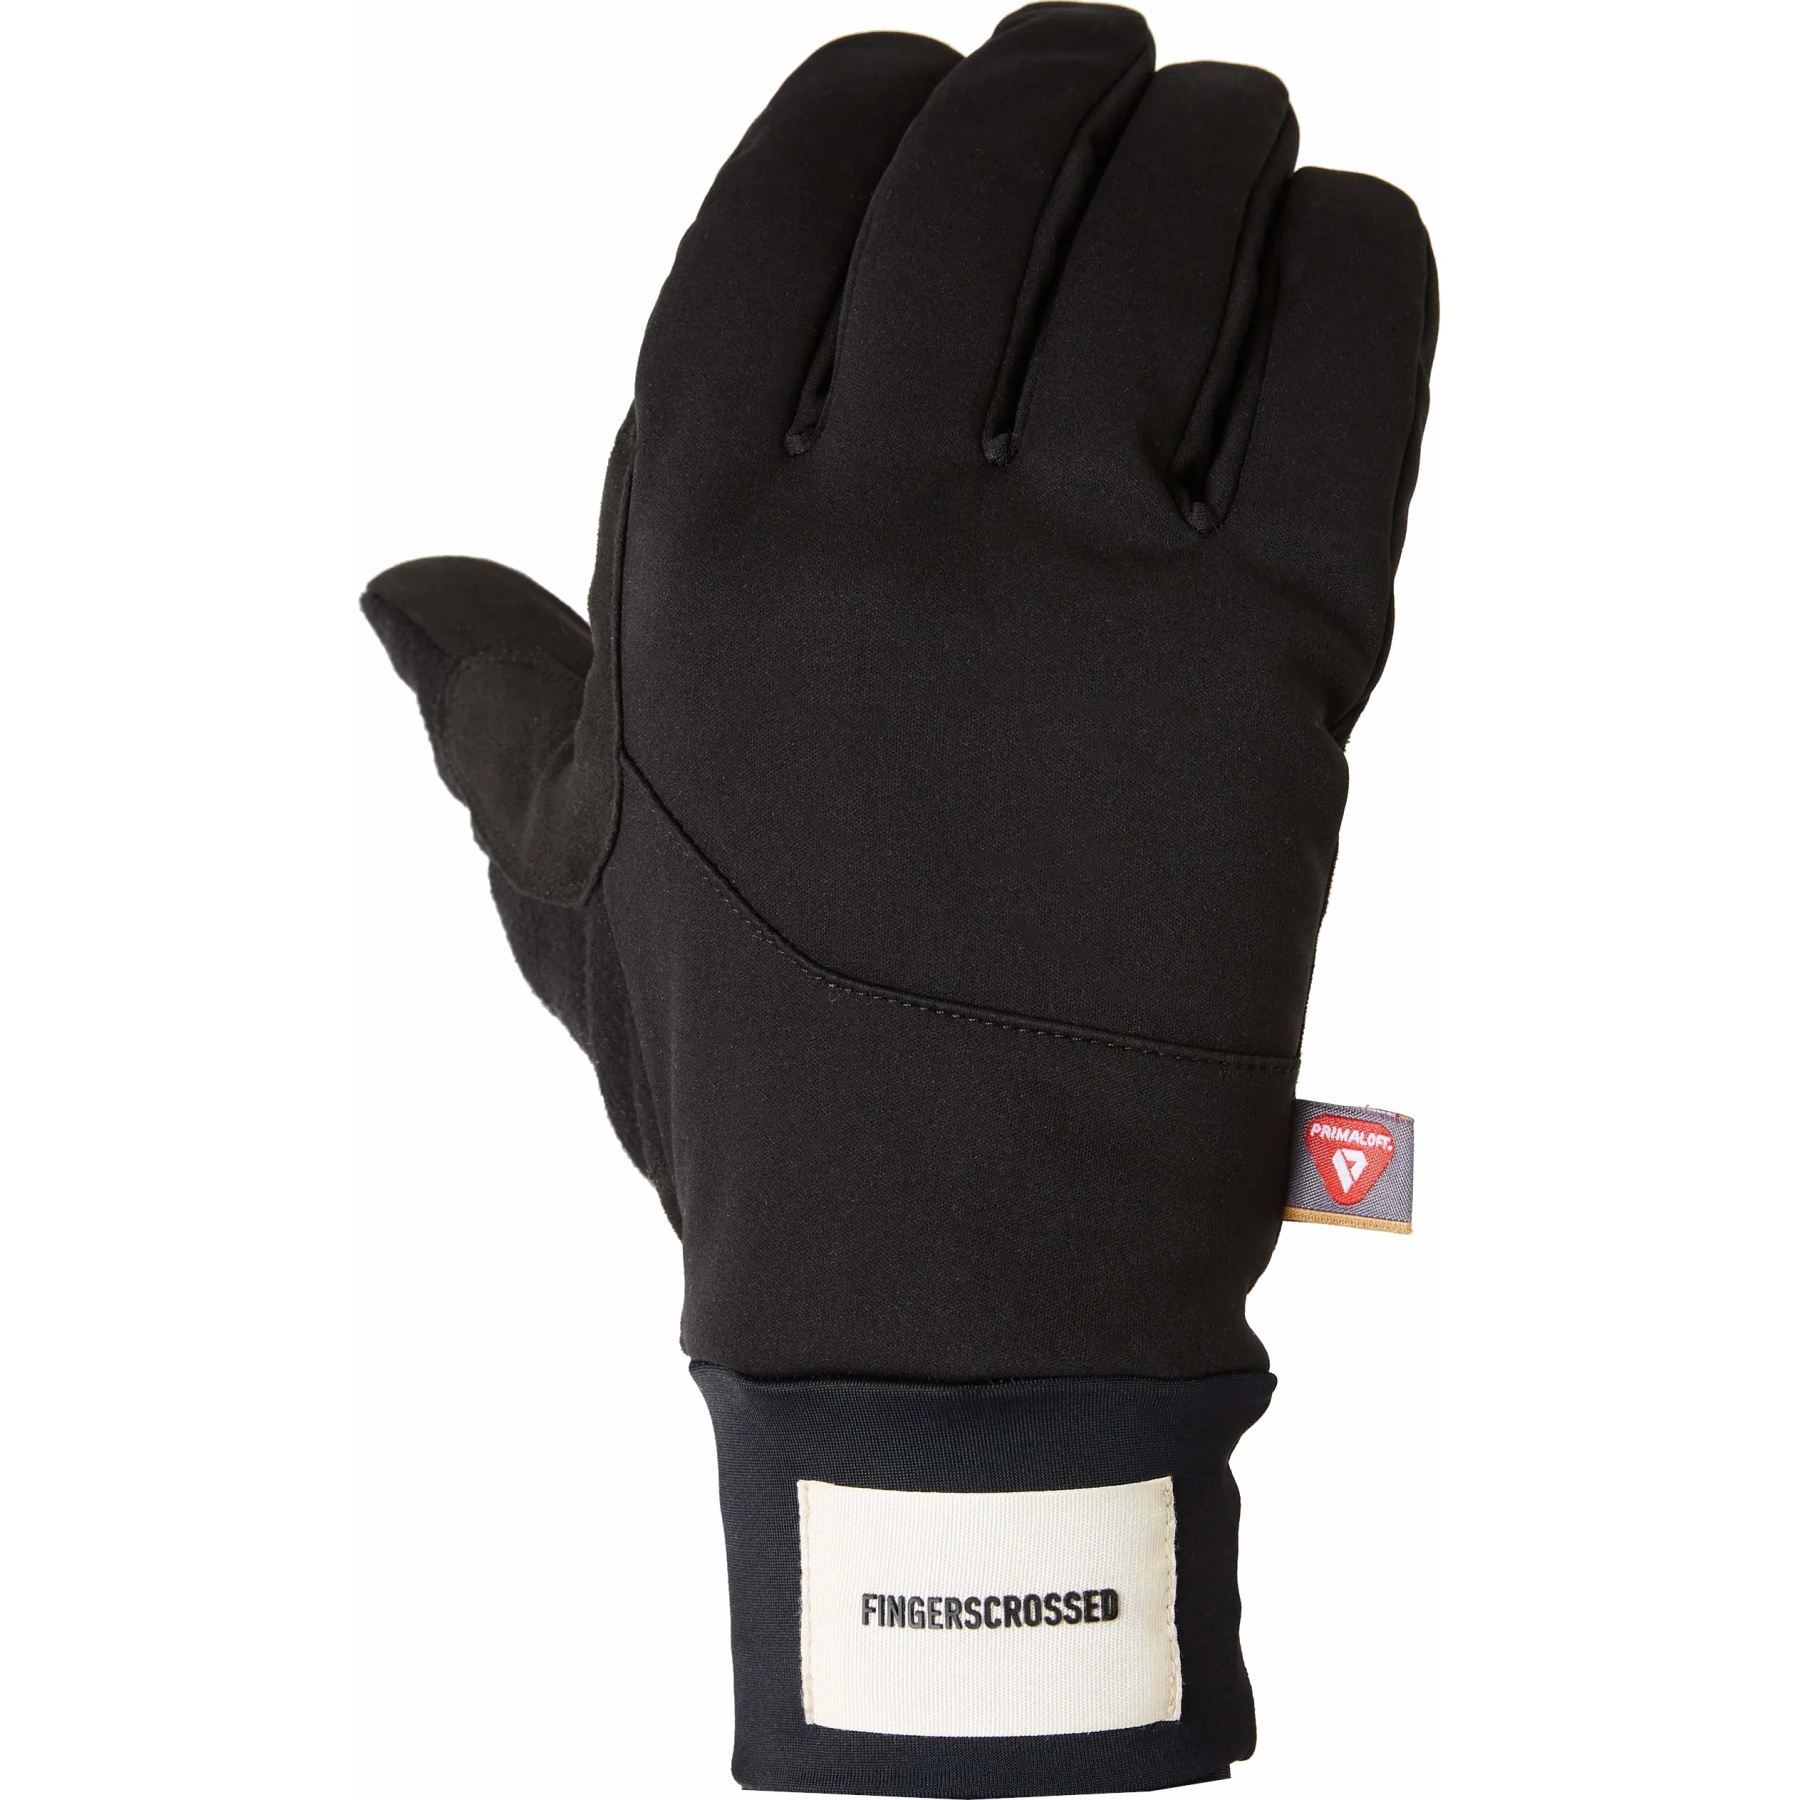 Productfoto van FINGERSCROSSED Winter Fietshandschoenen - Zwart